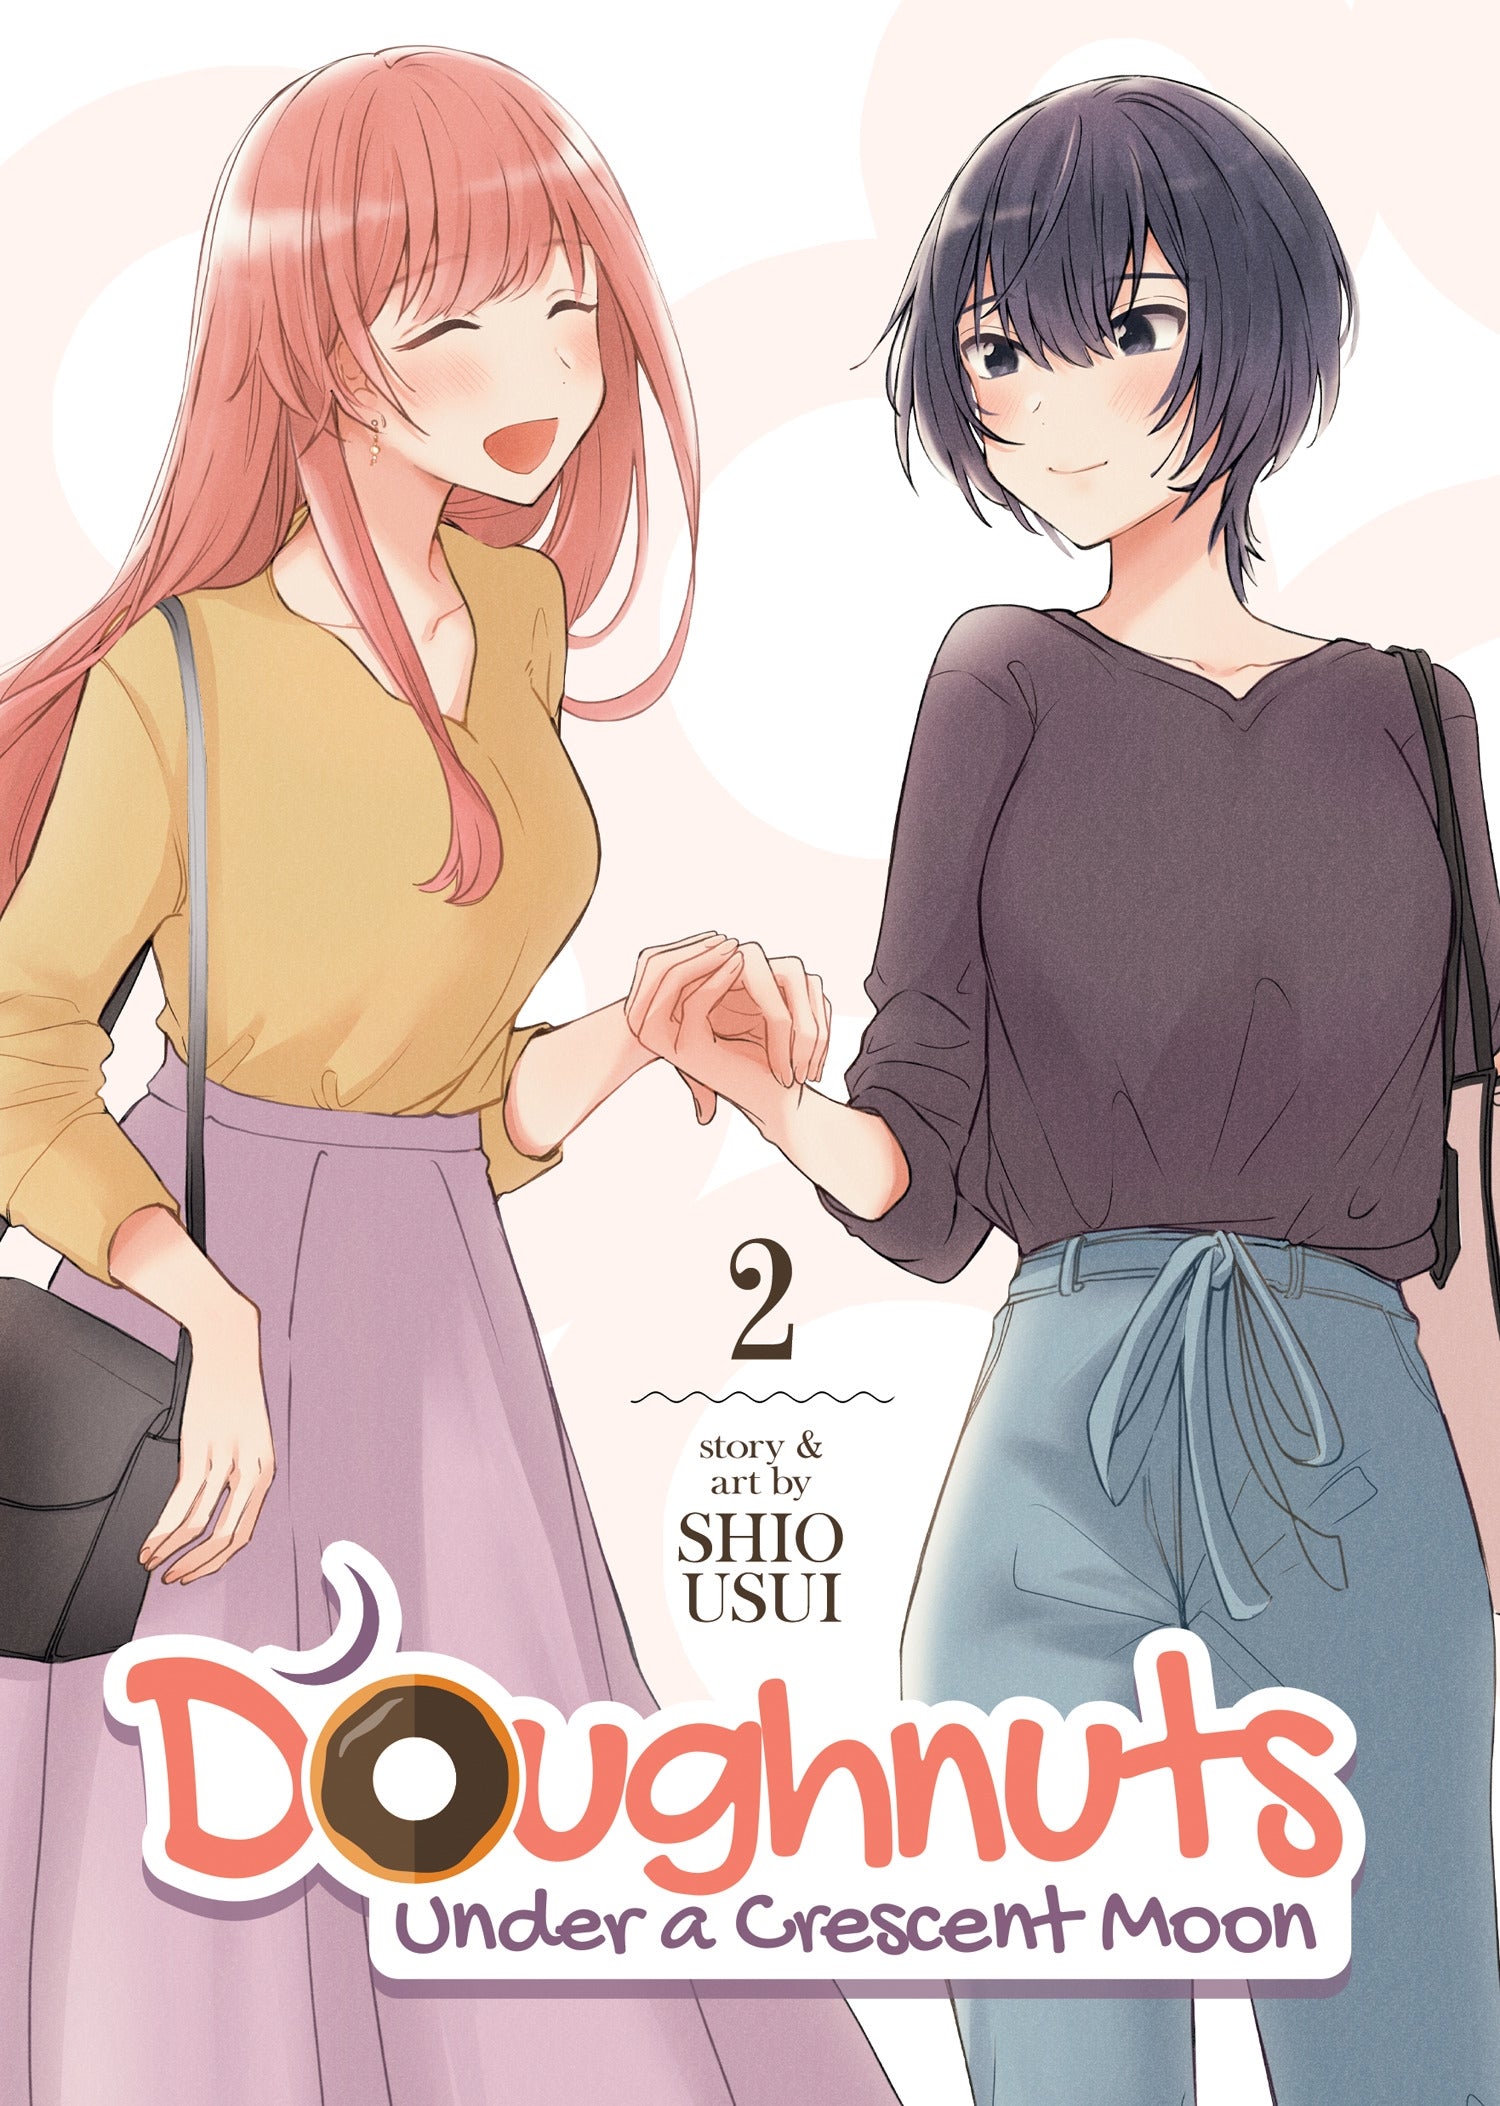 Doughnuts Under a Crescent Moon Vol. 2 - Manga Warehouse